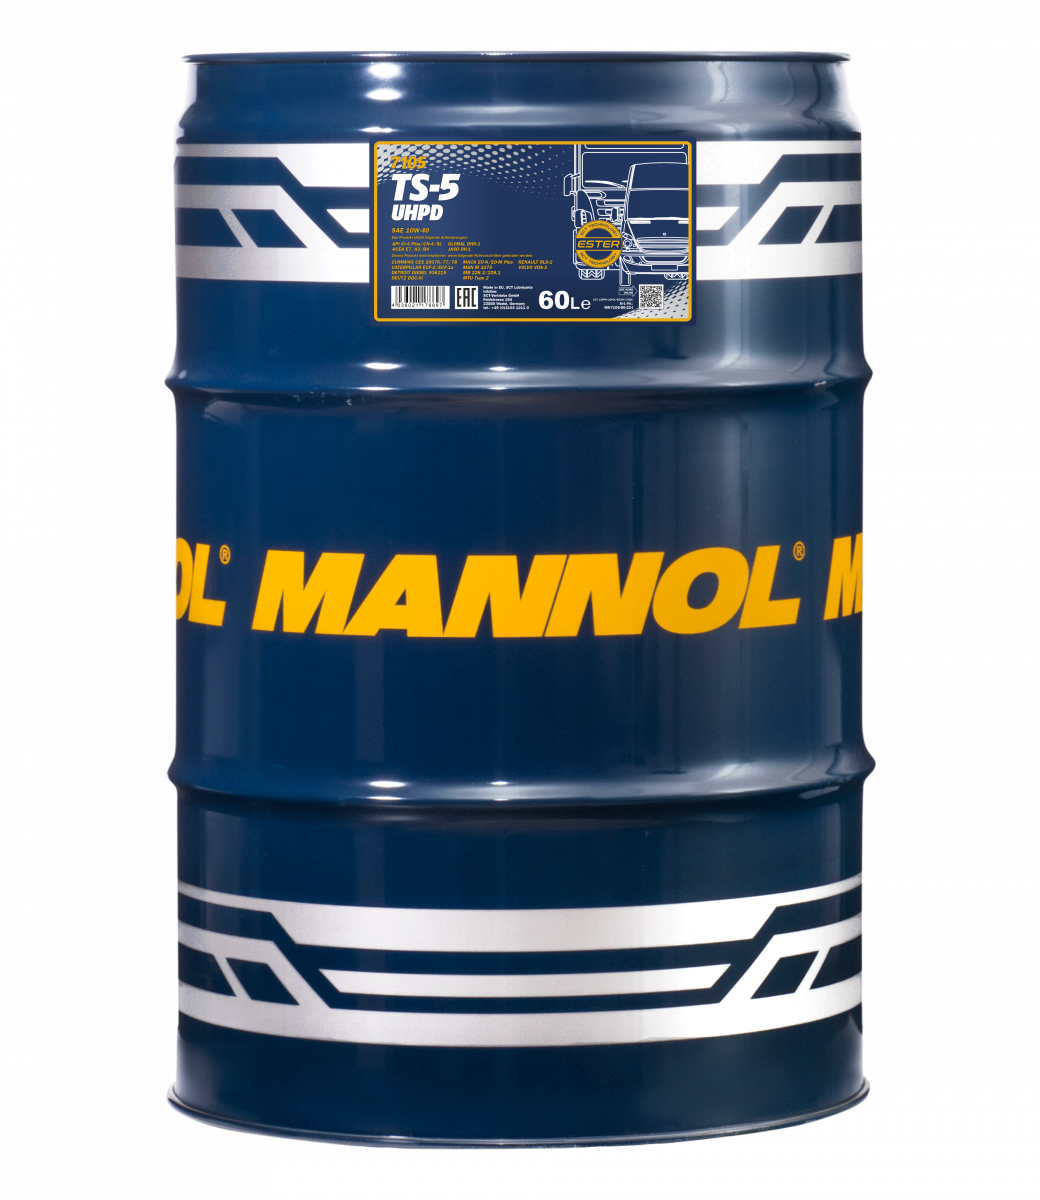 10W-40 Mannol 7105 TS-5 UHPD Motoröl 60 Liter